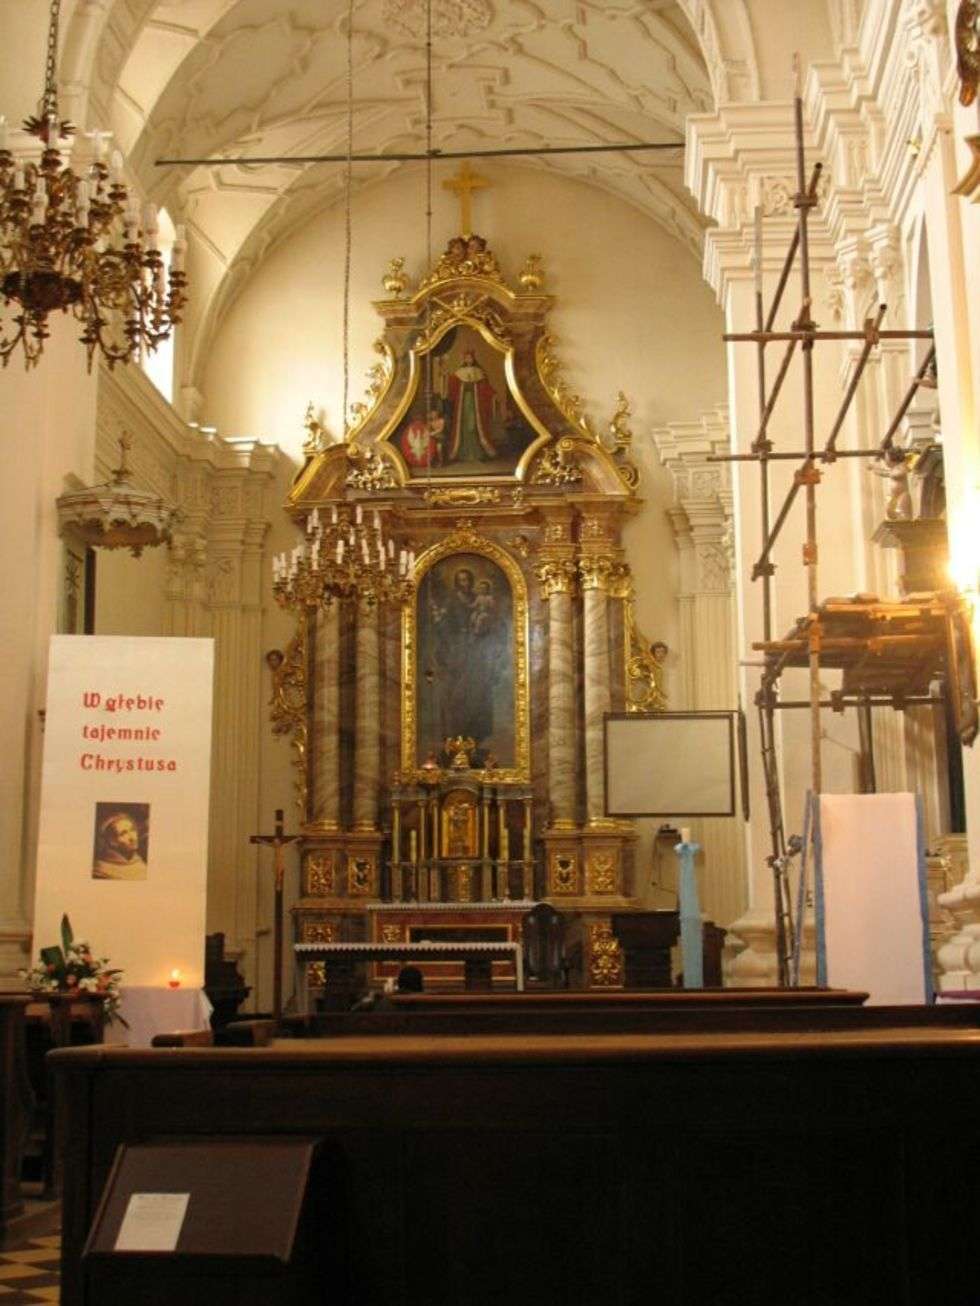  Kościół św. Józefa OO. Karmelici (zdjęcie 10) - Autor: Tomek Galezowski